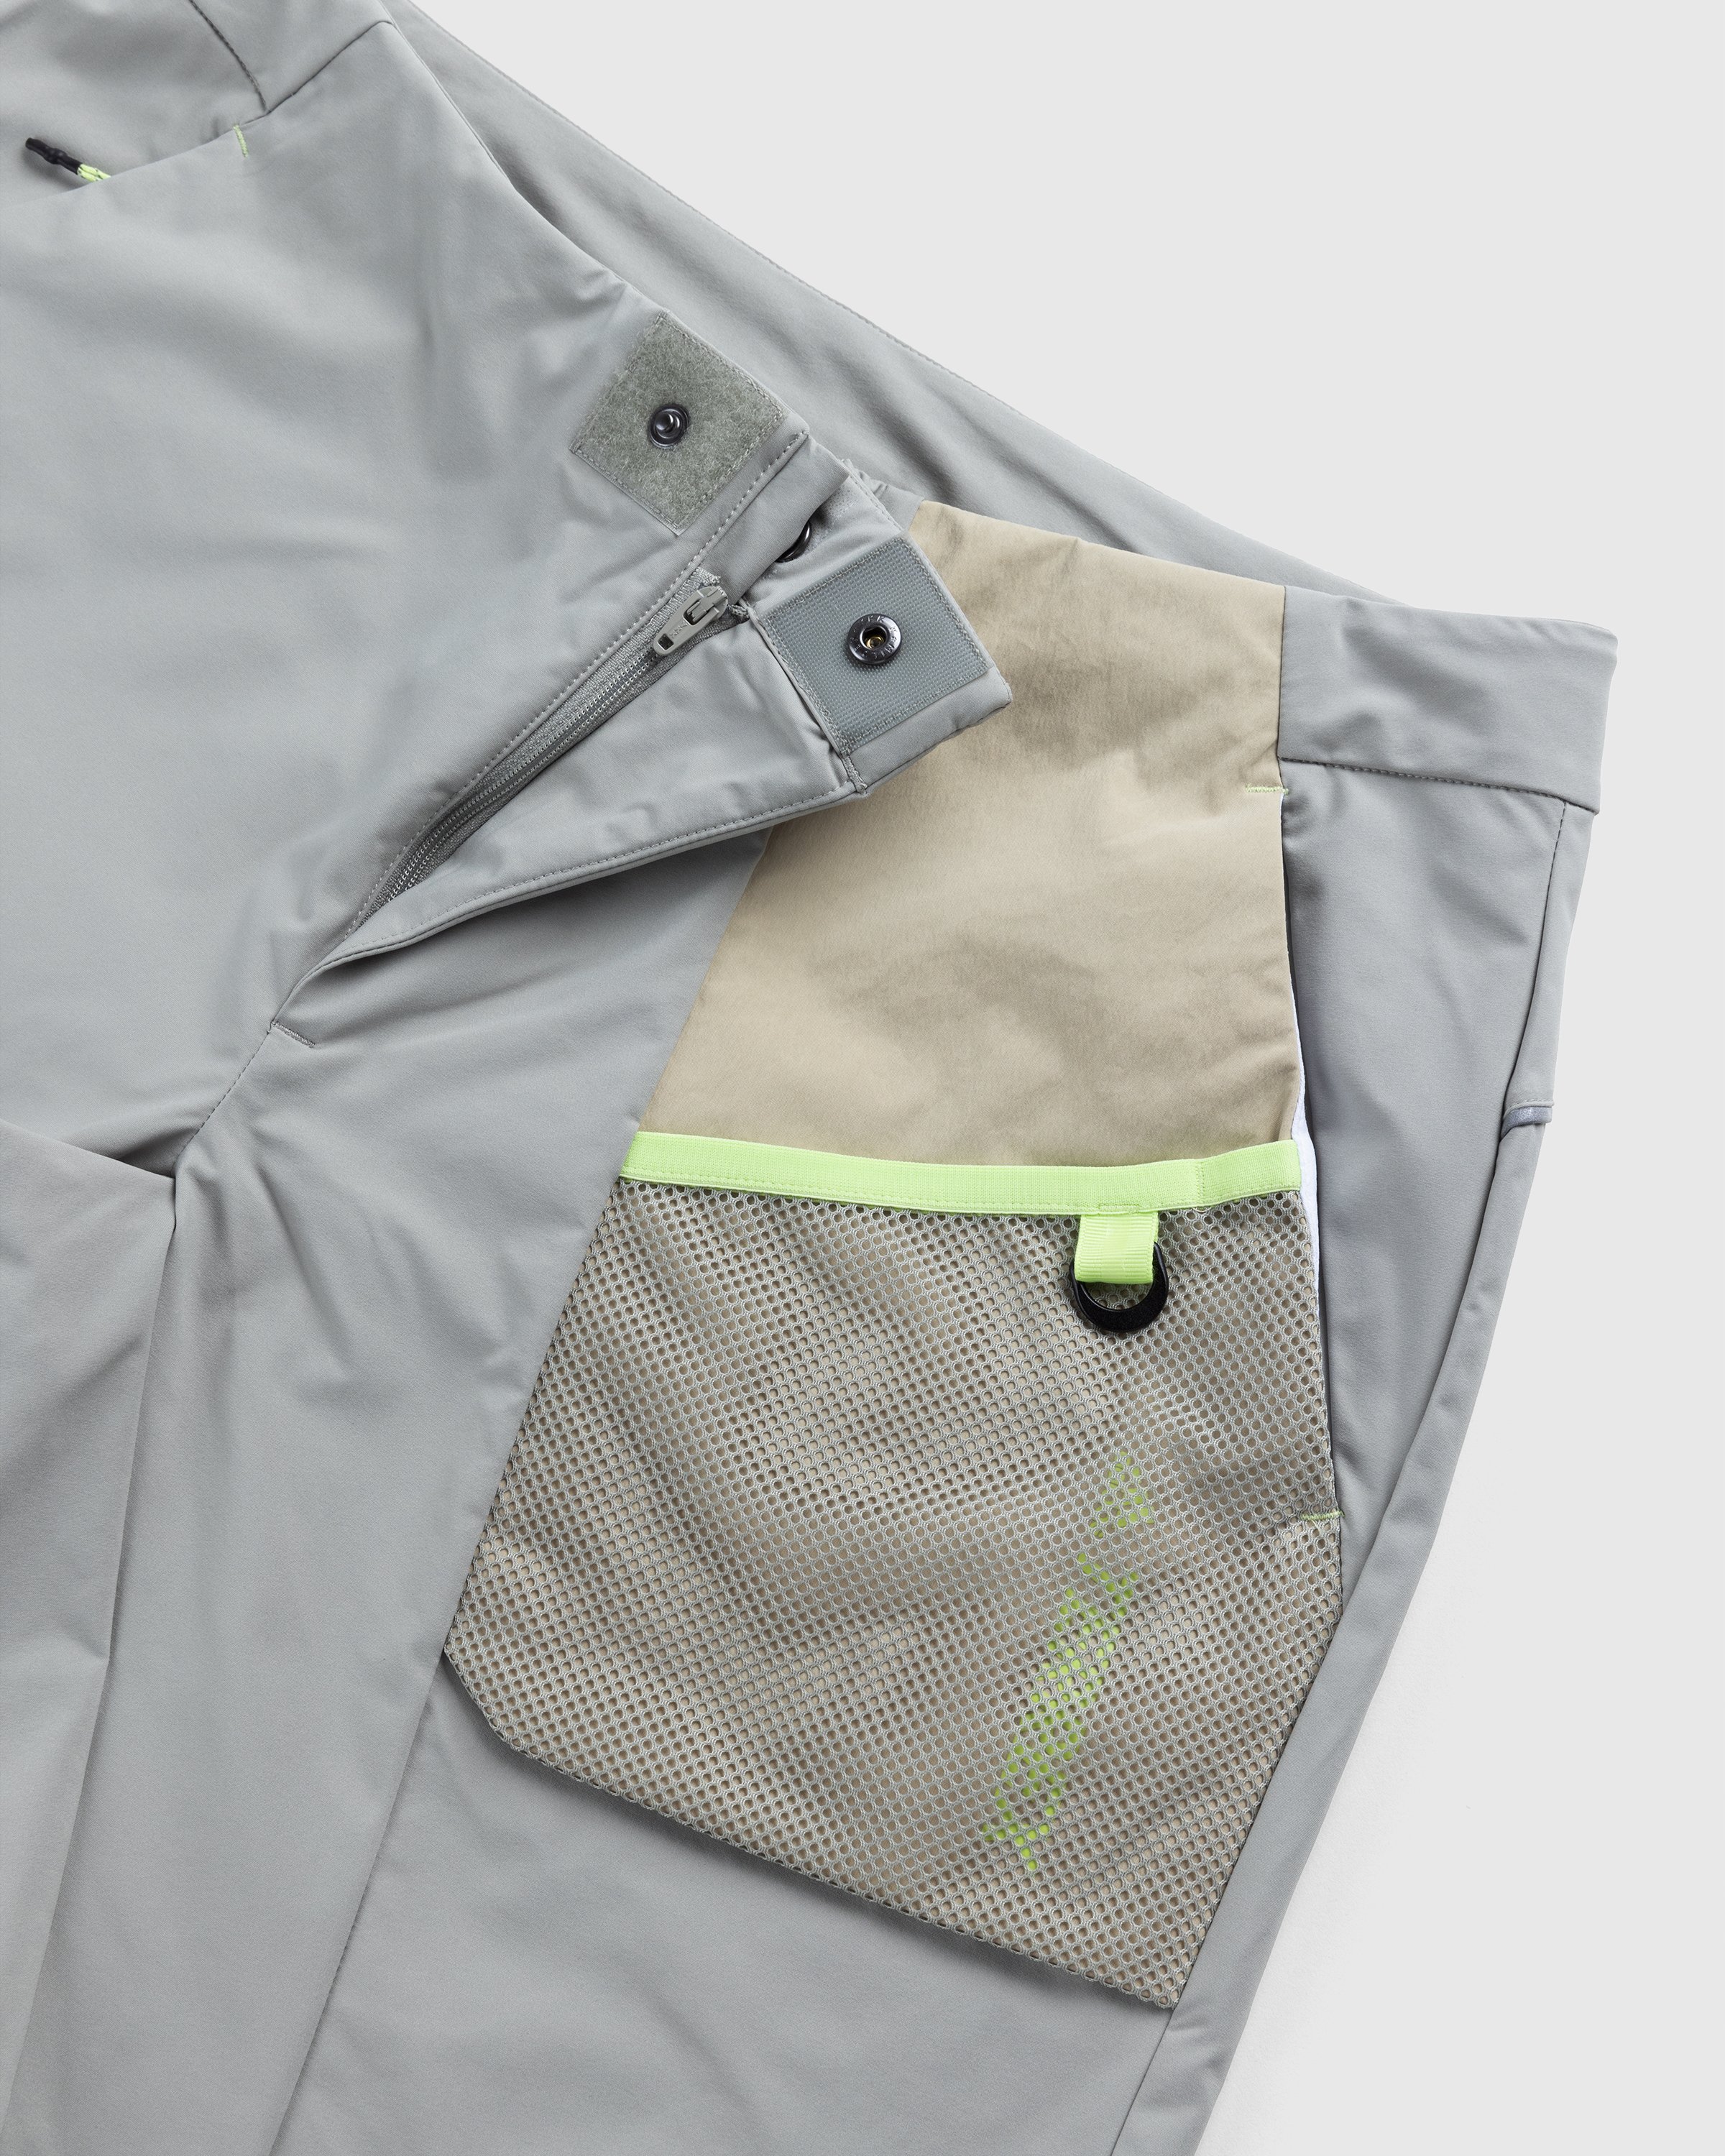 Adidas - Voyager Shorts Feather Grey/Savanna - Clothing - Beige - Image 4